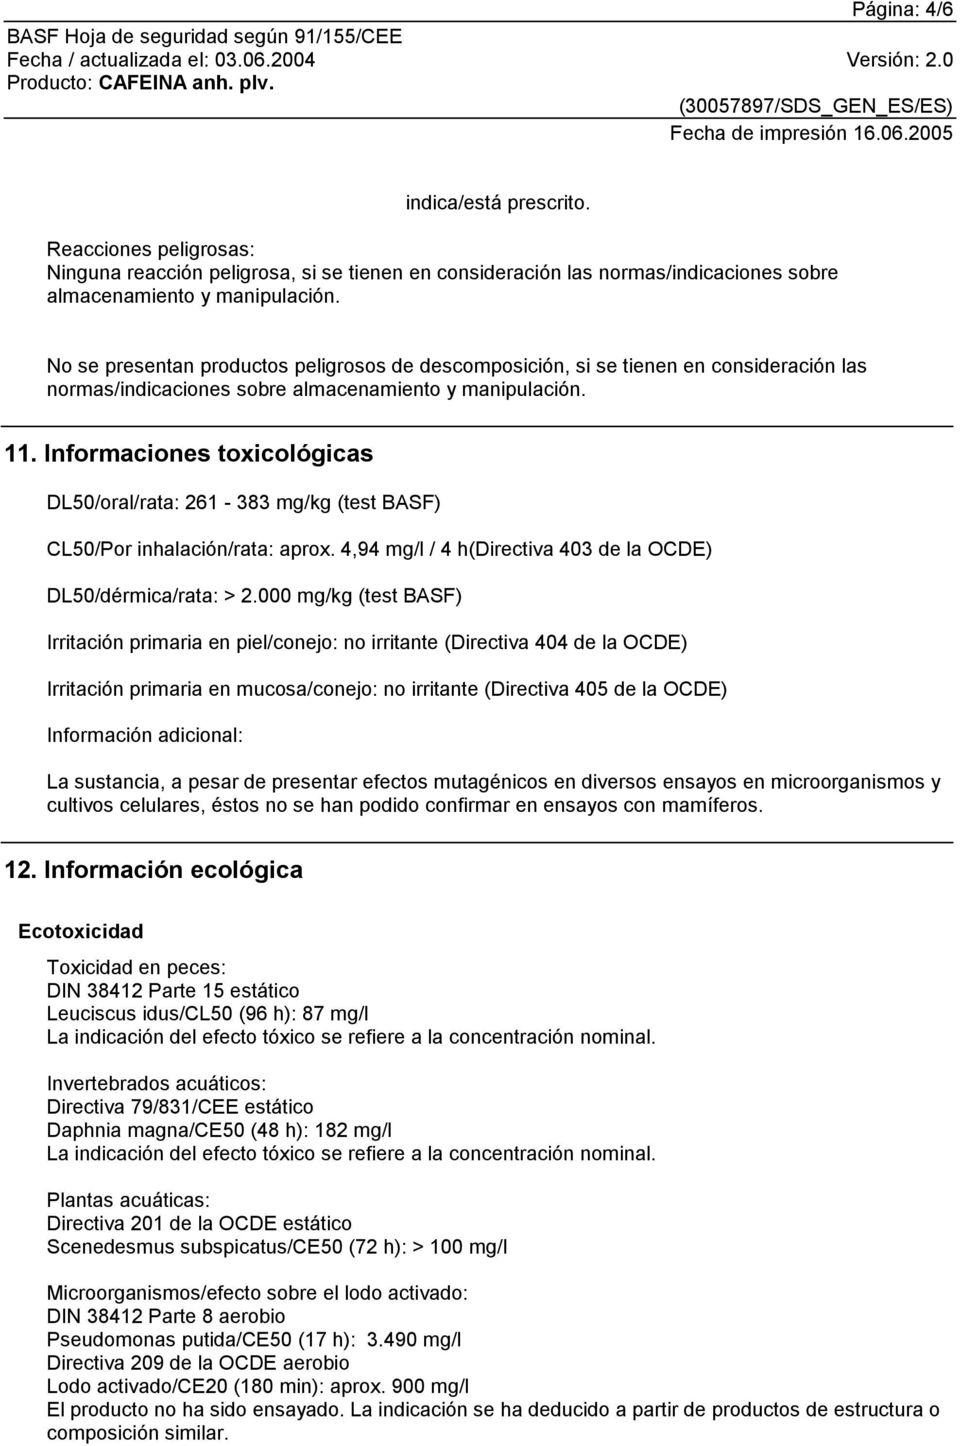 Informaciones toxicológicas DL50/oral/rata: 261-383 mg/kg (test BASF) CL50/Por inhalación/rata: aprox. 4,94 mg/l / 4 h(directiva 403 de la OCDE) DL50/dérmica/rata: > 2.